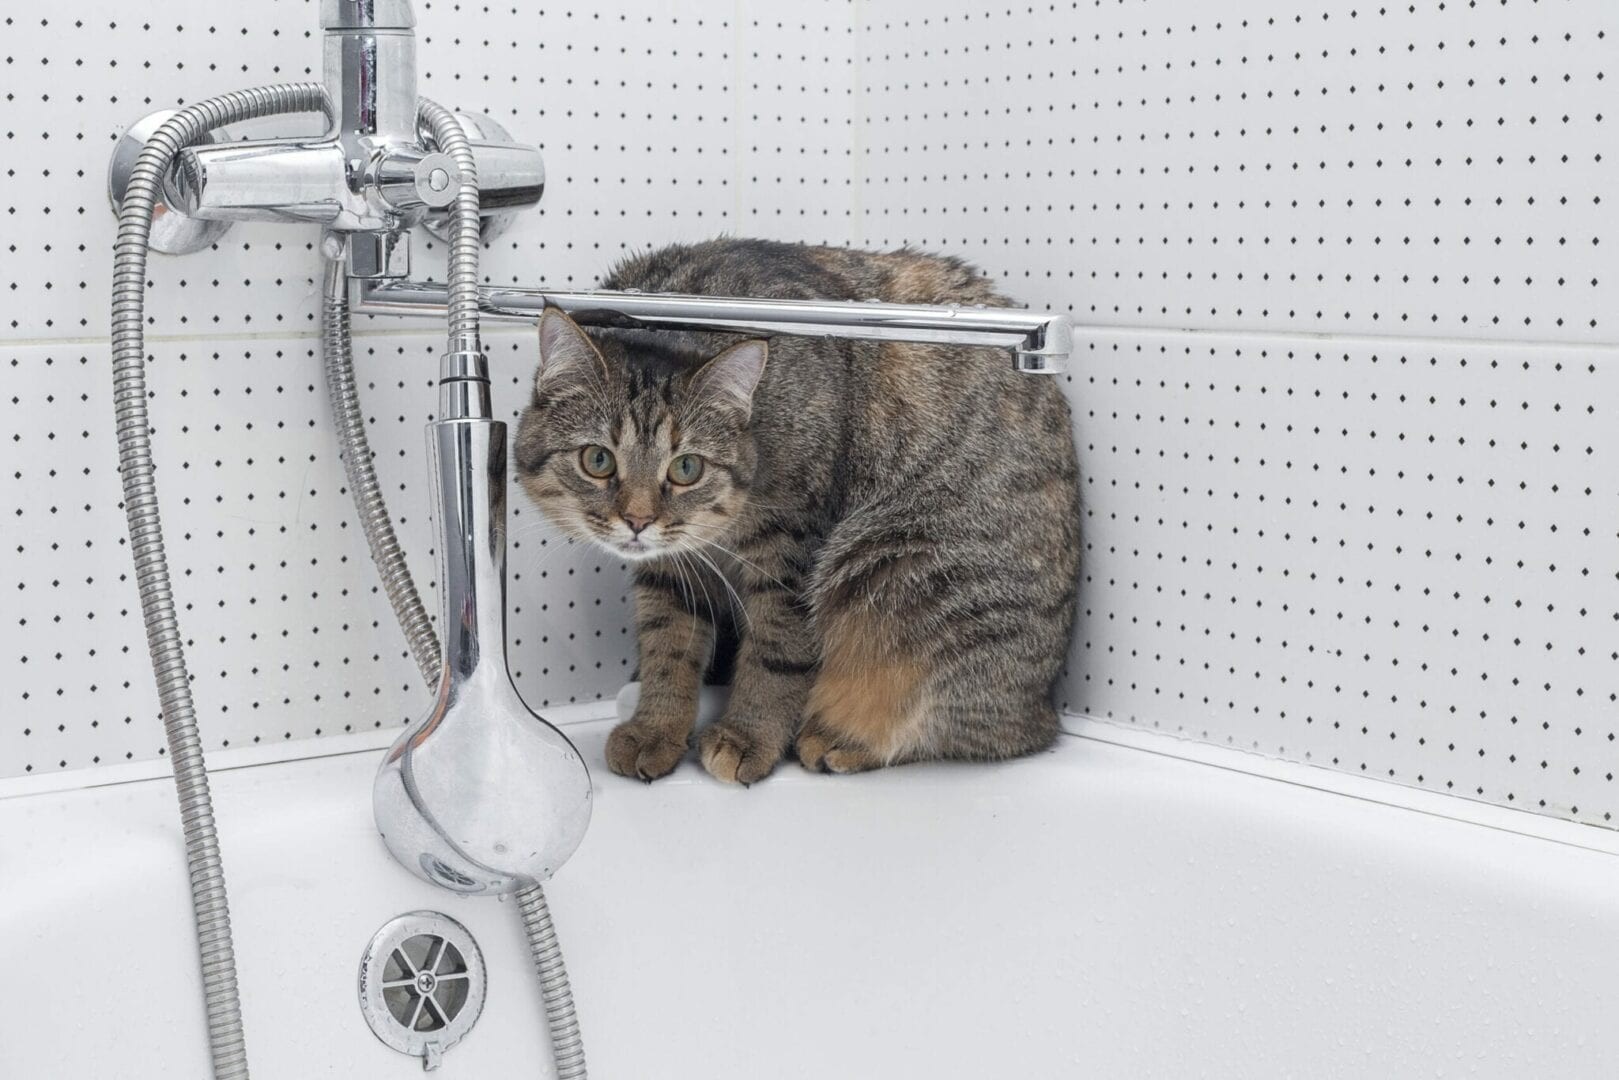 Proč kočky kakají ve vaně a jak tomu zabránit